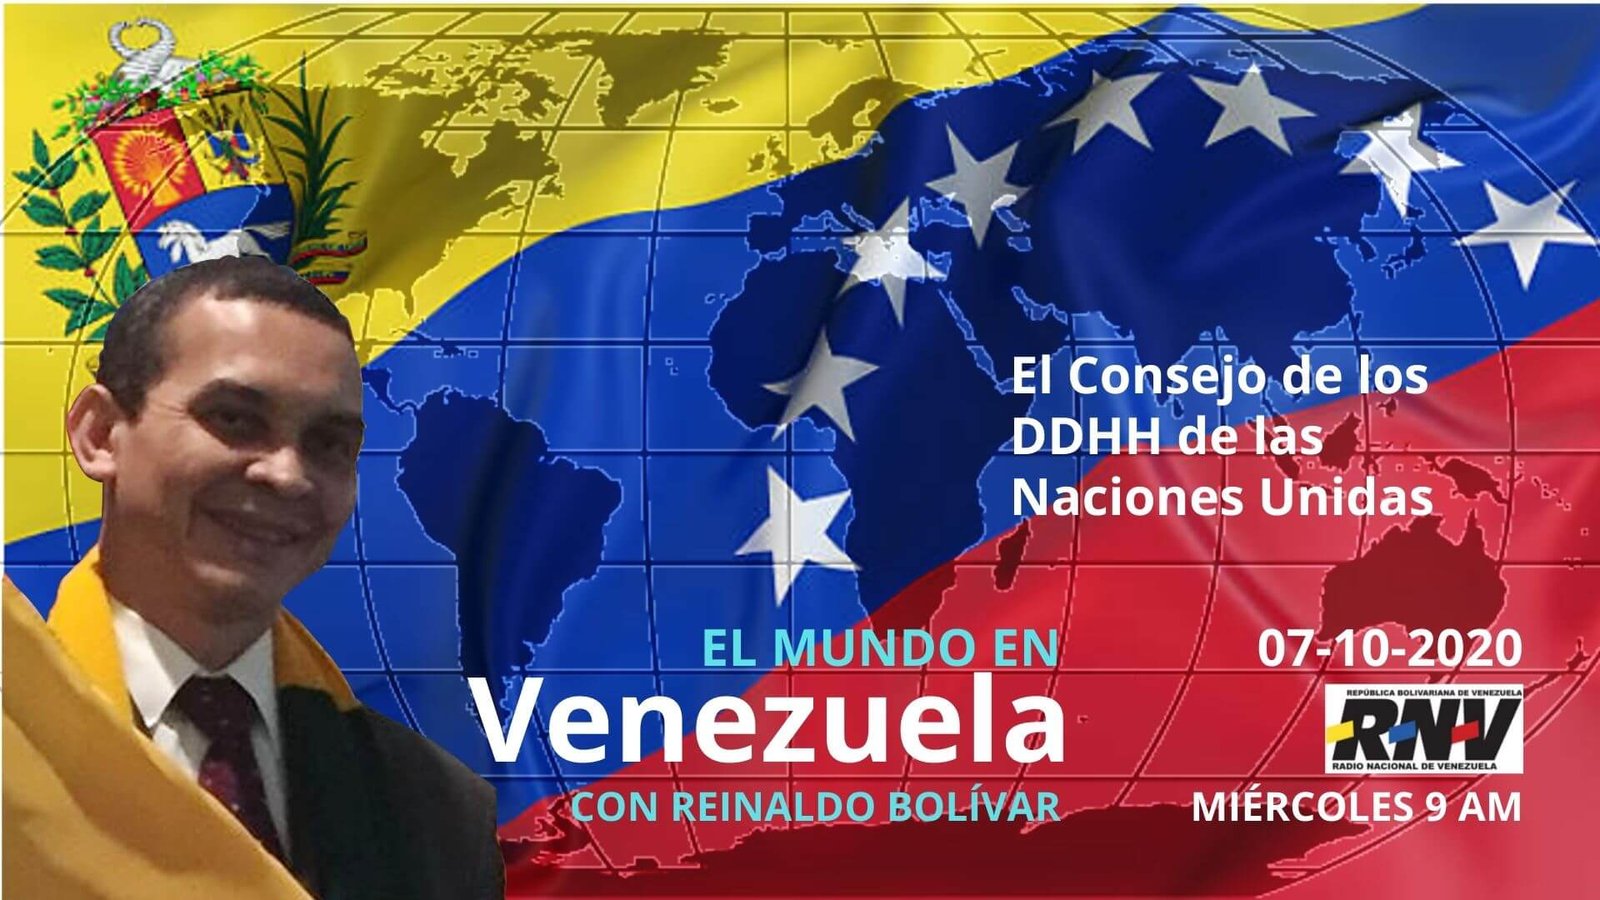 El Mundo en Venezuela 07-10-2020